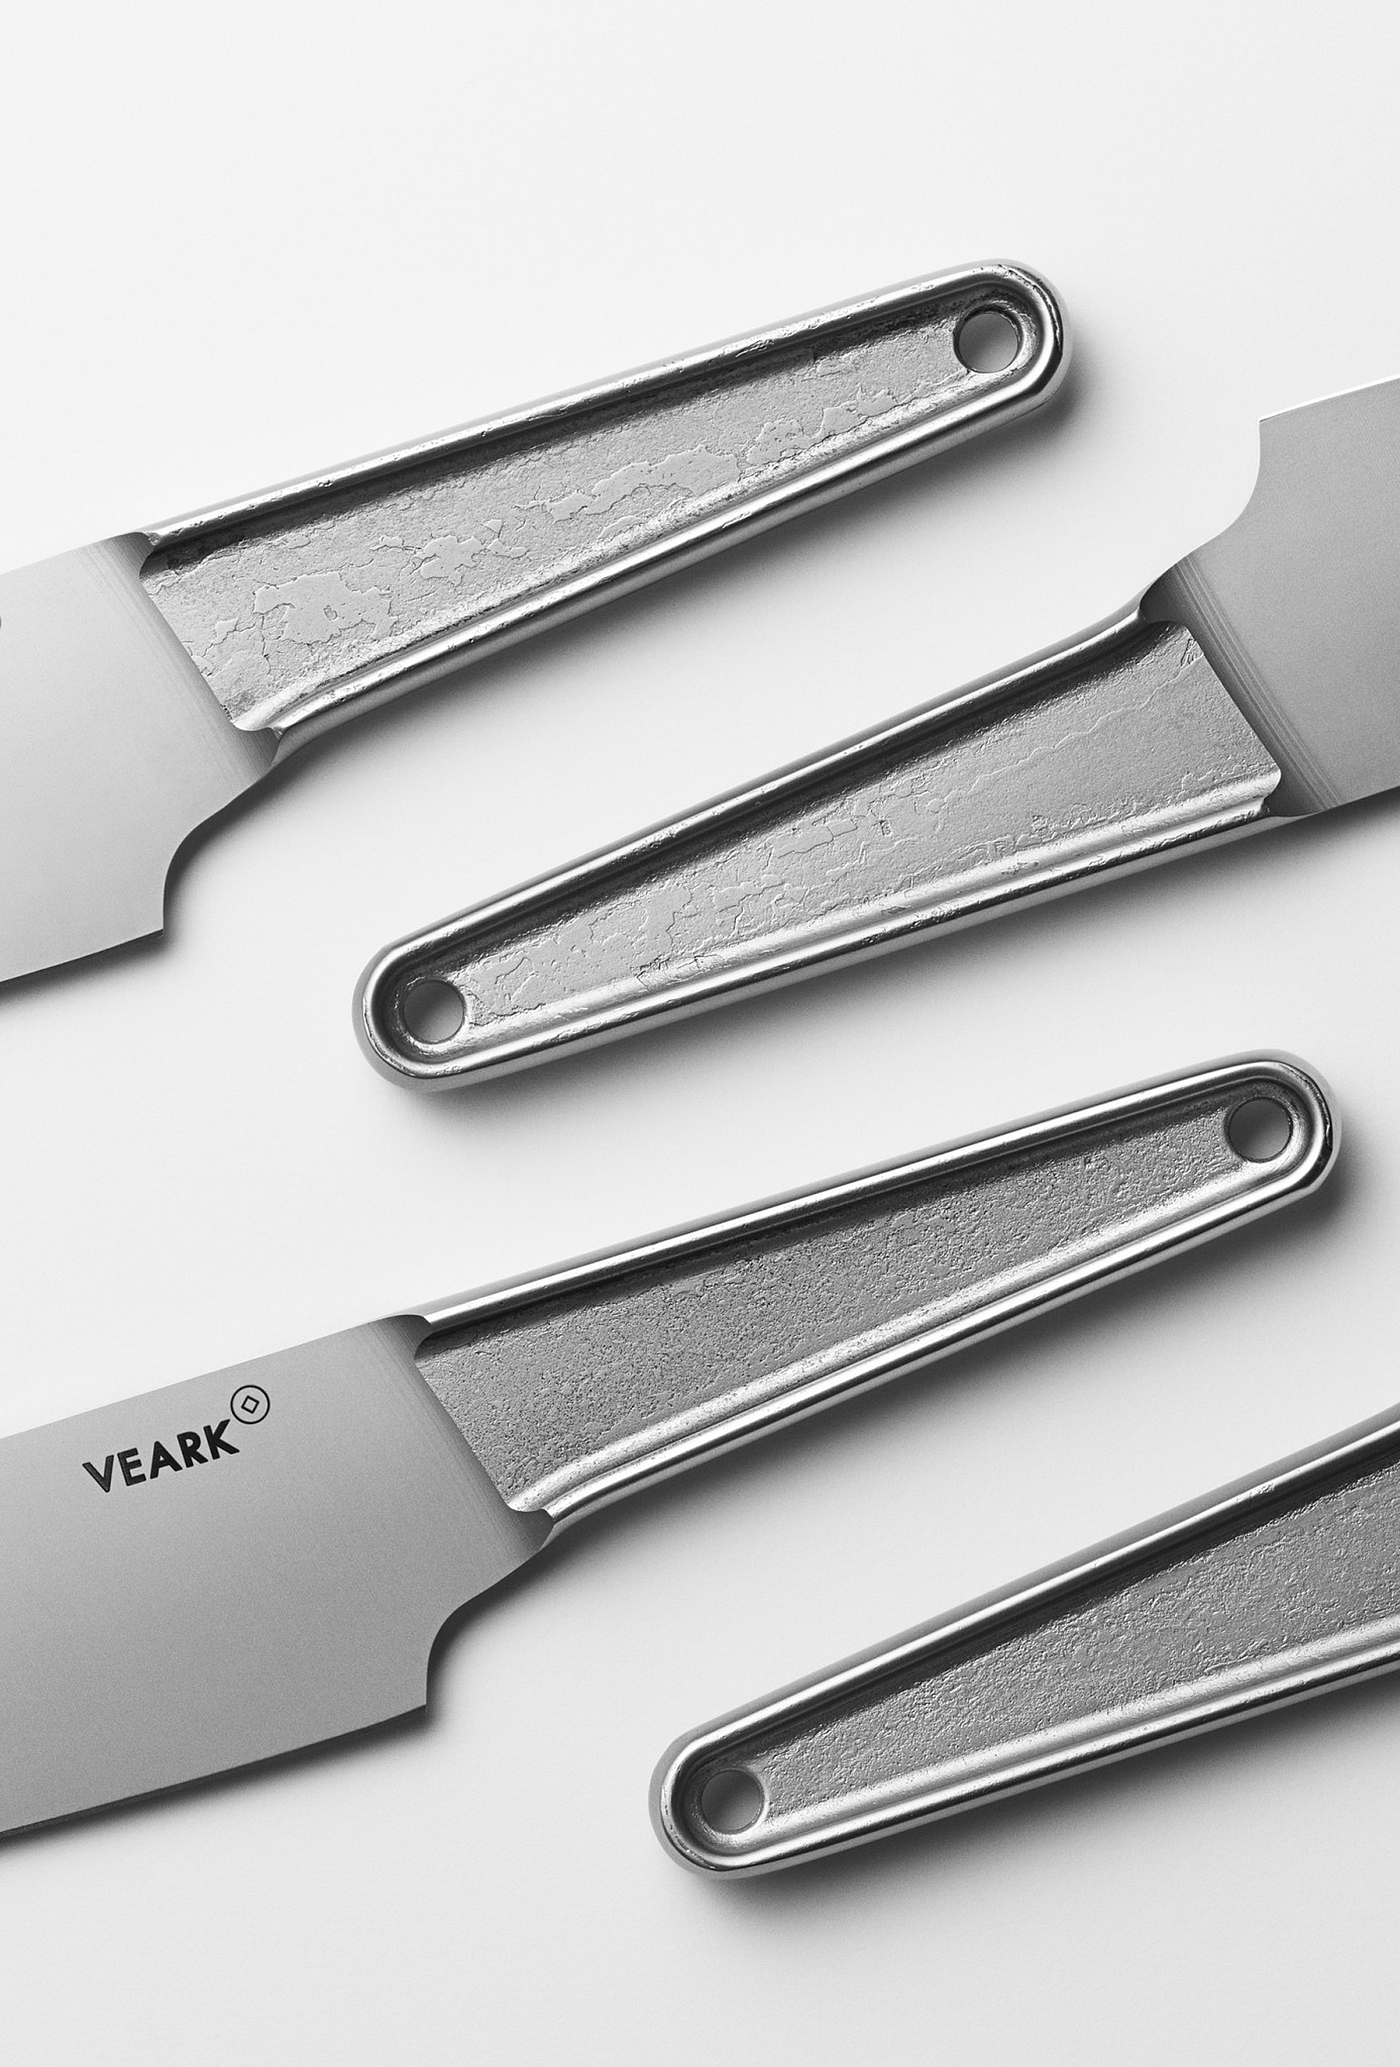 Veark's CK01，刀具，金属，